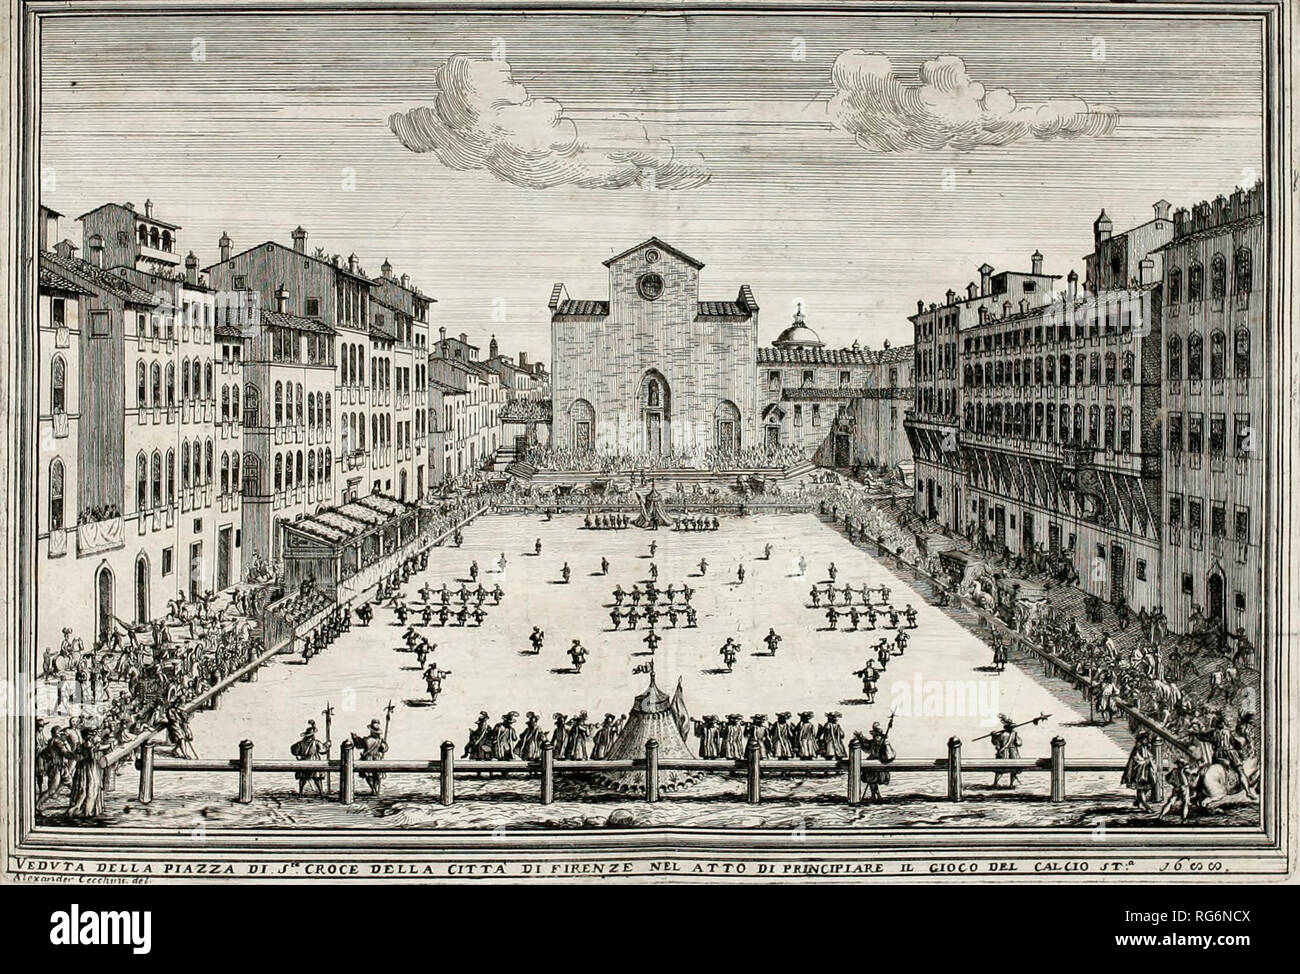 Un Calcio Fiorentino (histórico) juego de fútbol jugado en la Piazza Santa Croce, Florencia, Italia, circa 1688 Foto de stock